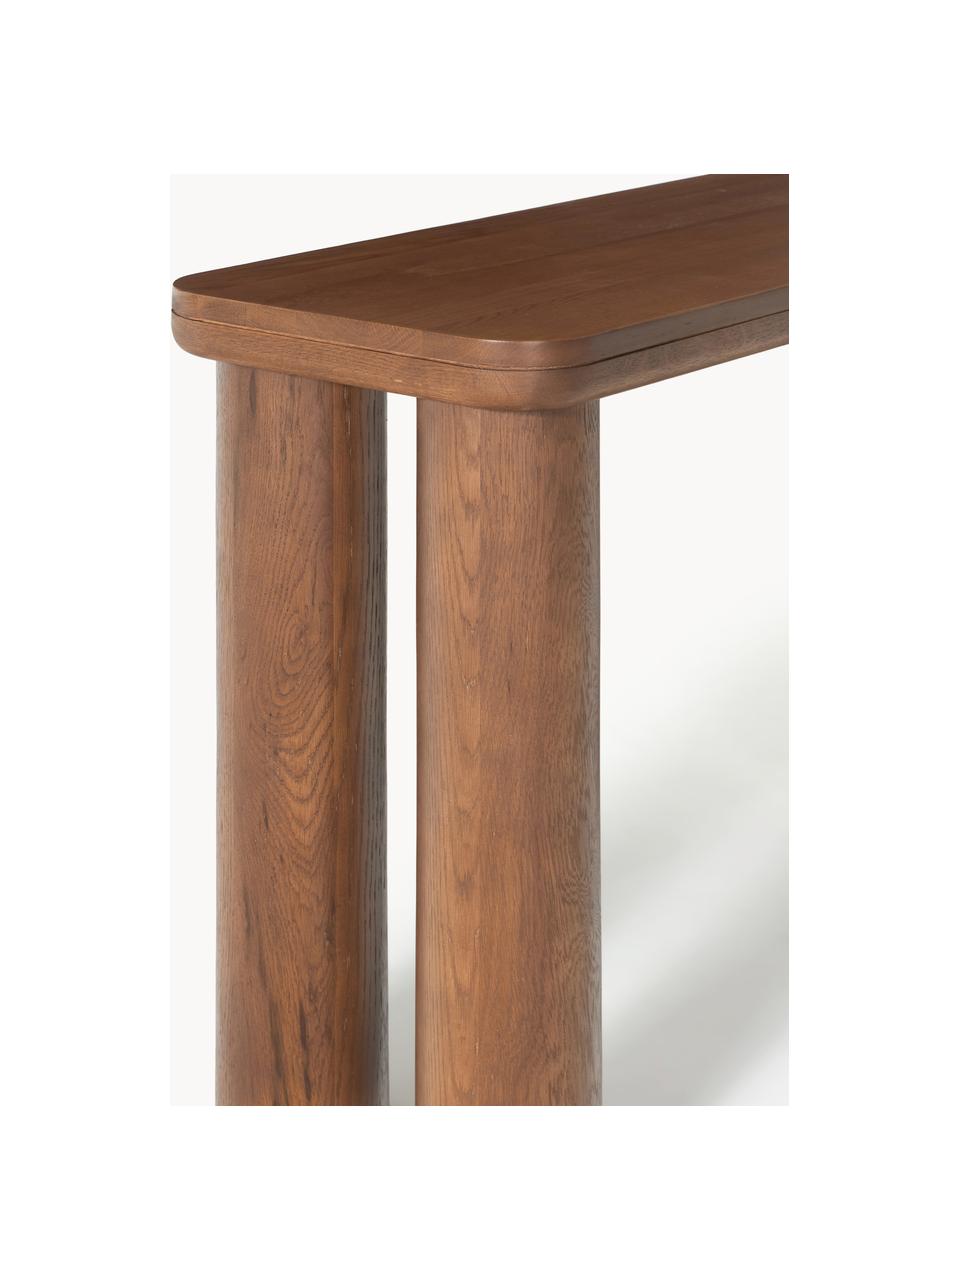 Konzolový stolek z dubového dřeva Kalia, Masivní dubové dřevo

Tento produkt je vyroben z udržitelných zdrojů dřeva s certifikací FSC®., Dubové dřevo, tmavě lakované, Š 110 cm, V 77 cm